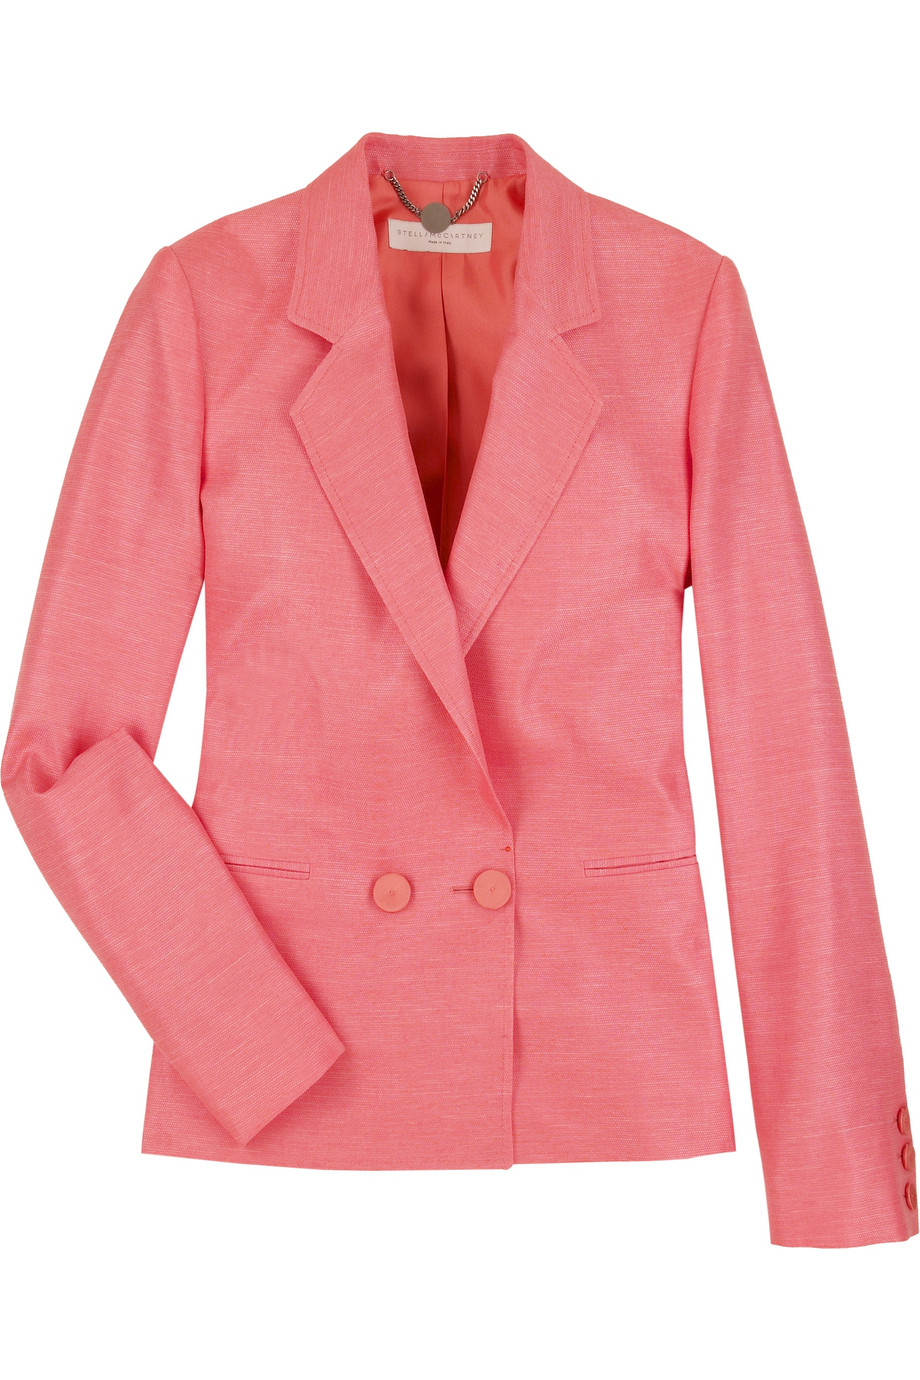 Stella McCartney Boyfriend Flax Linen Blazer in Pink - Lyst